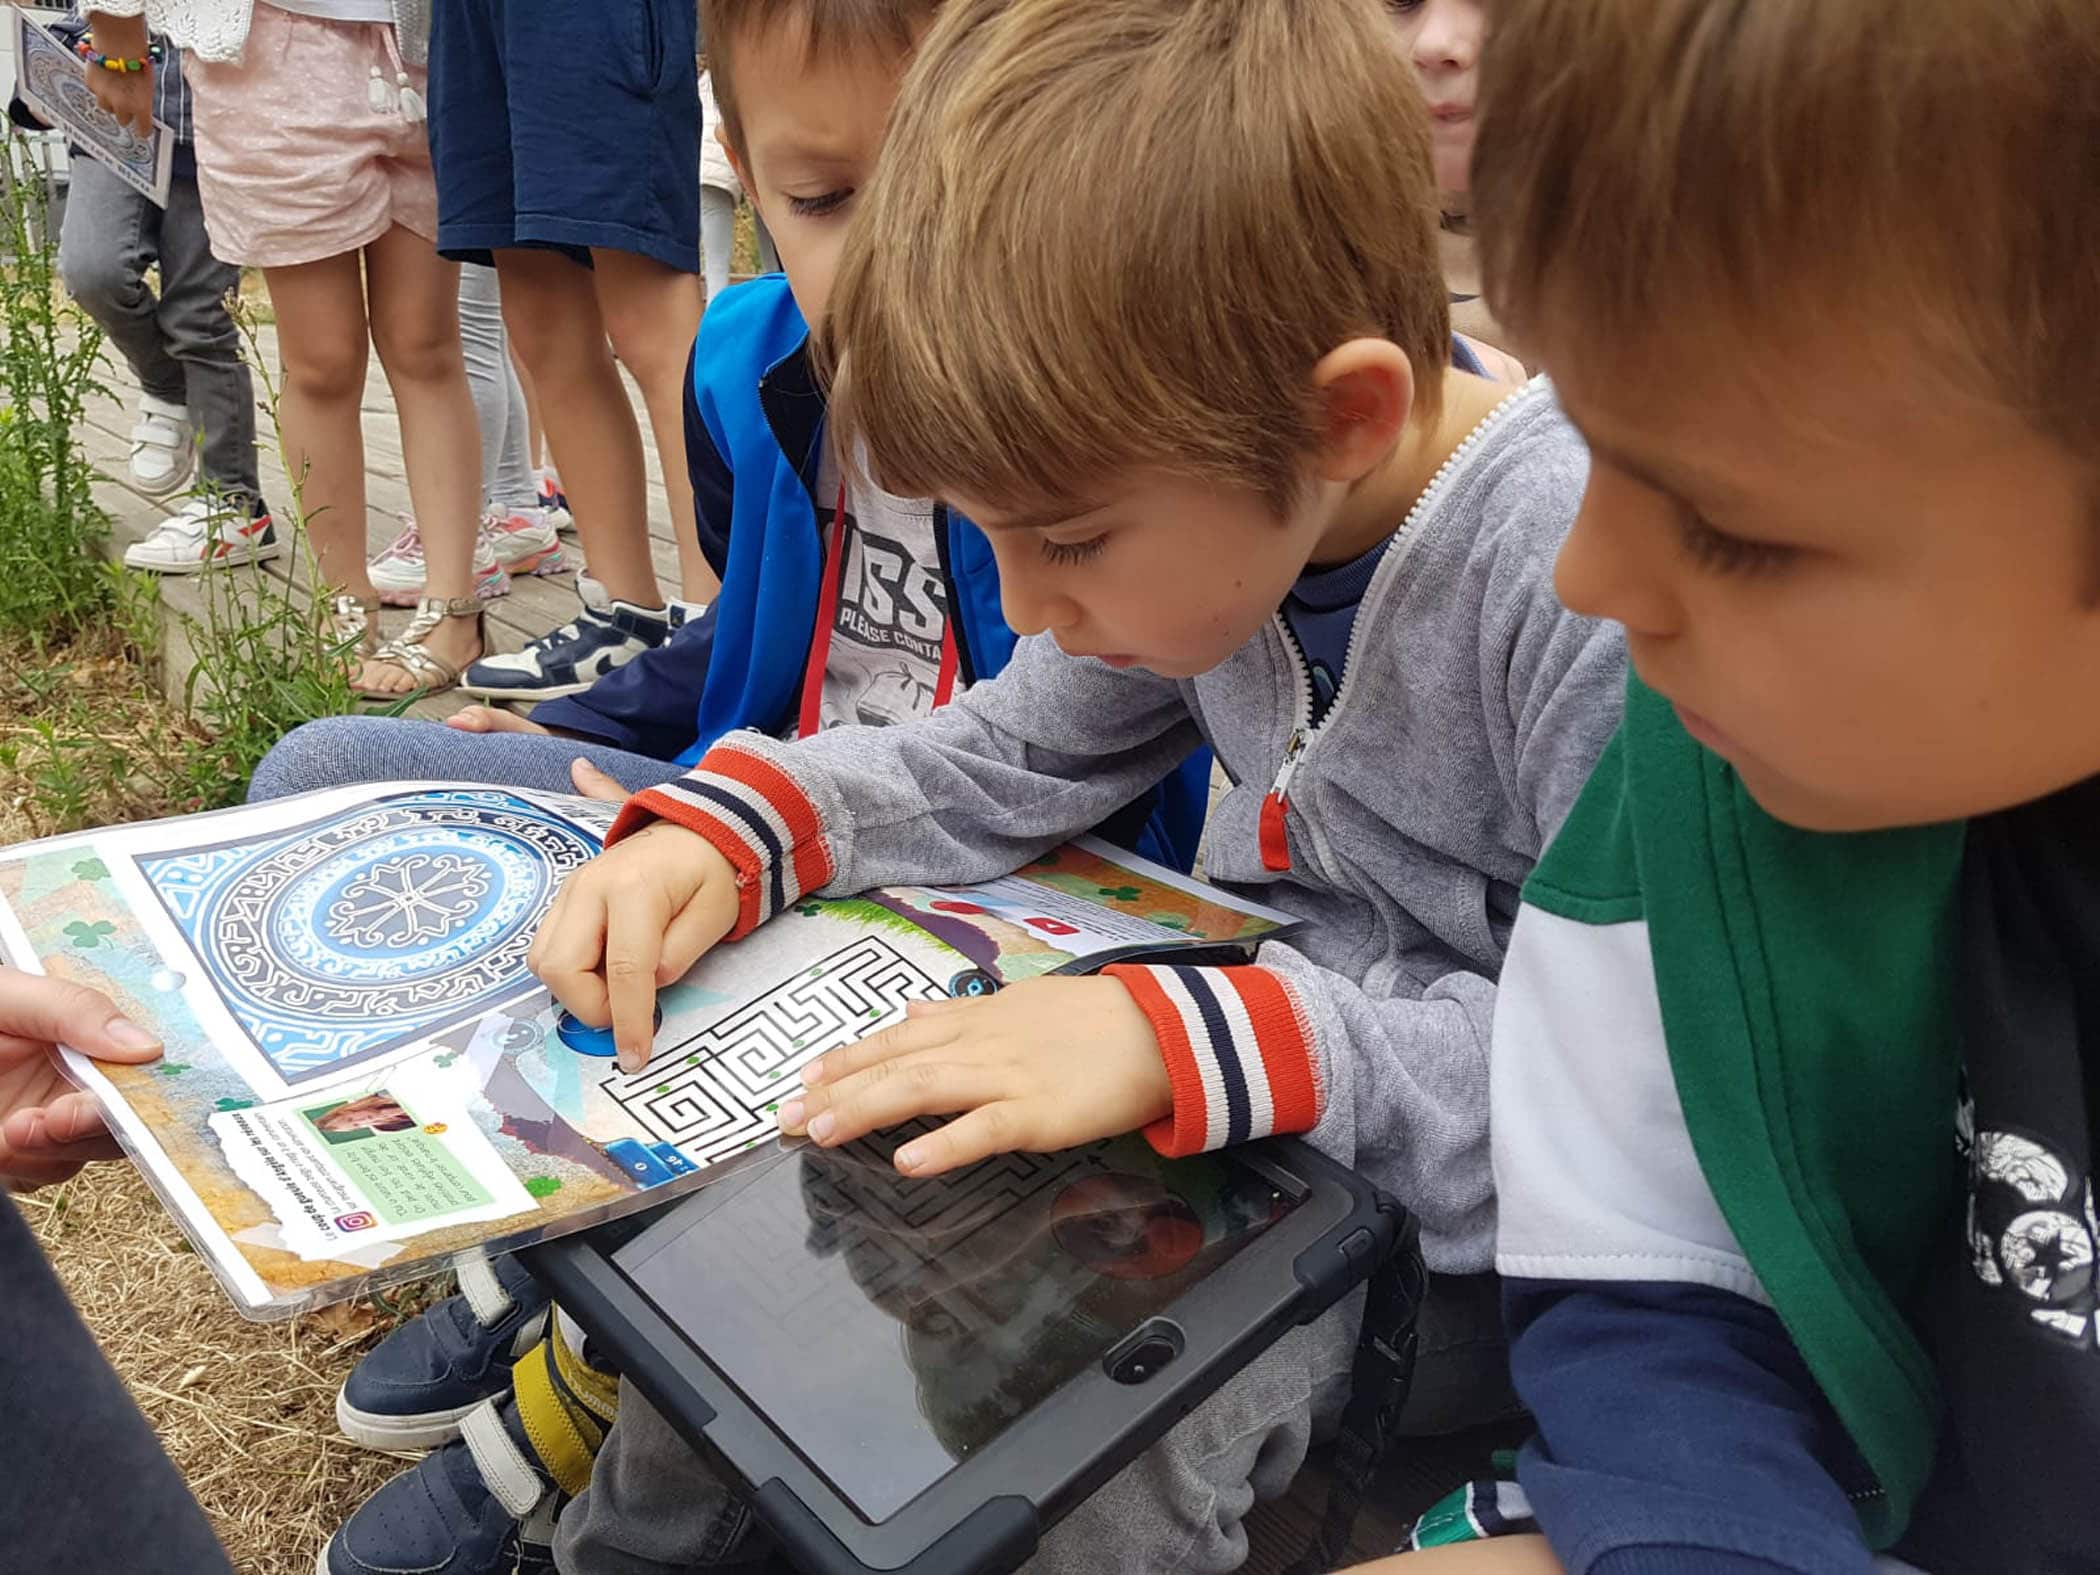 Des enfants de 7 ans appartenant à un centre aéré essayent de résoudre une énigme sur une tablette pendant un jeu de piste